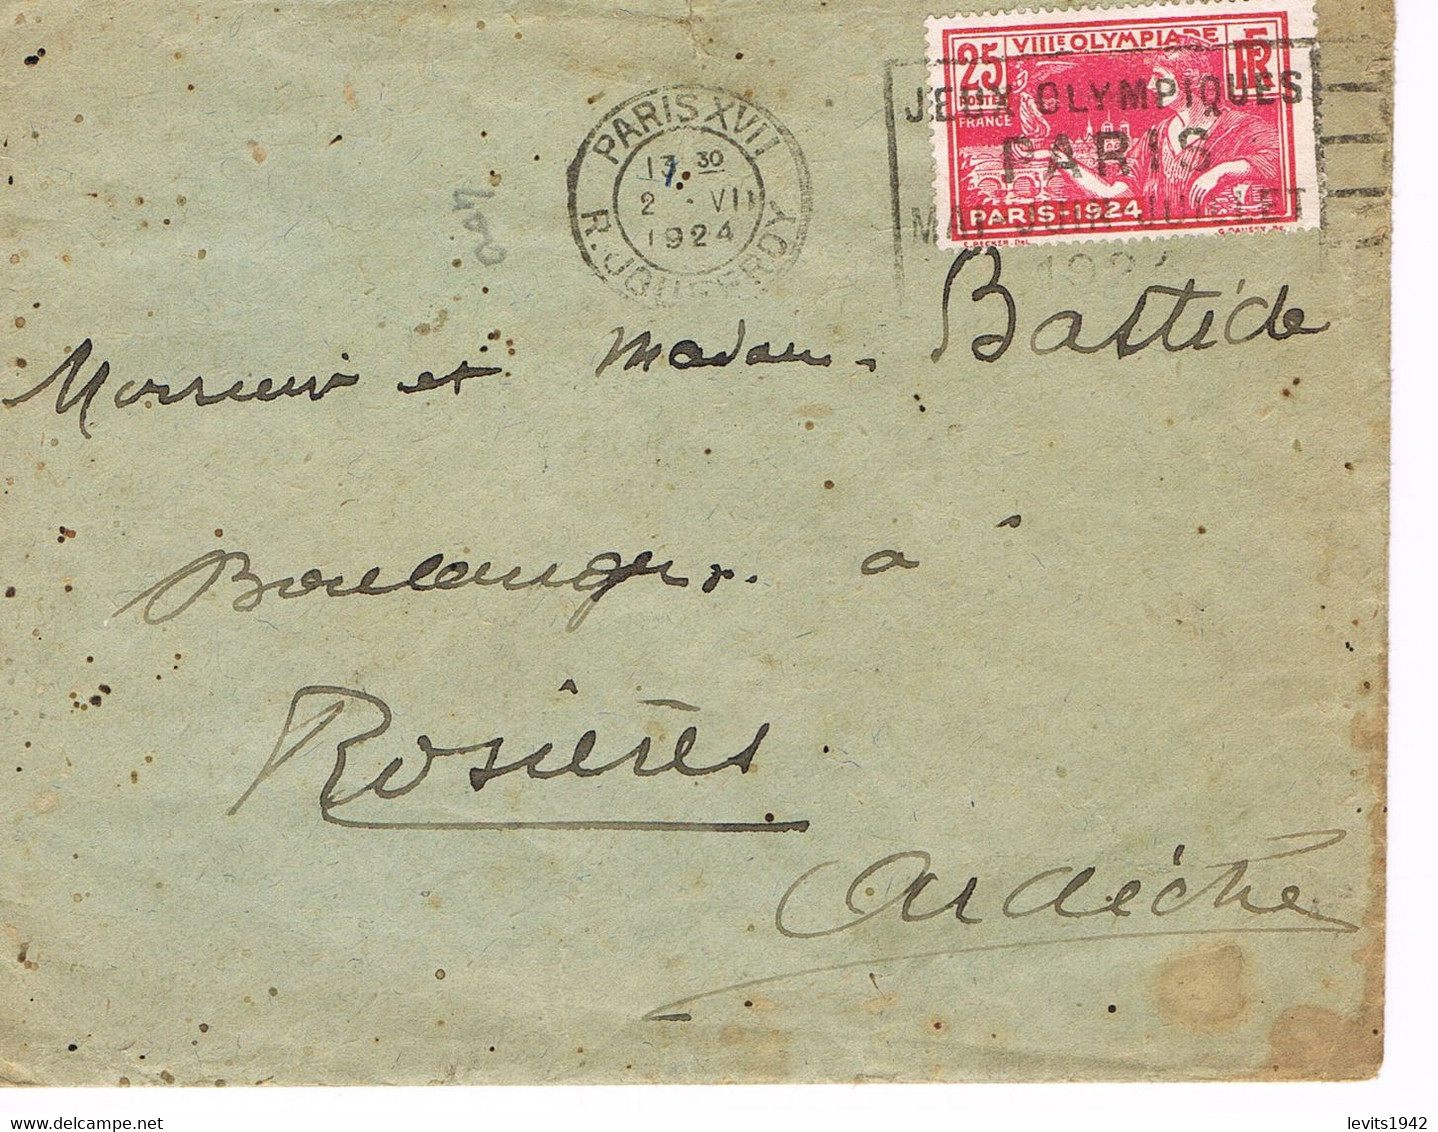 JEUX OLYMPIQUES 1924 -  MARQUE POSTALE - TIMBRE CONCORDANT - 02-07 - JOUR DE COMPETITION - ESCRIME - TIR - - Ete 1924: Paris